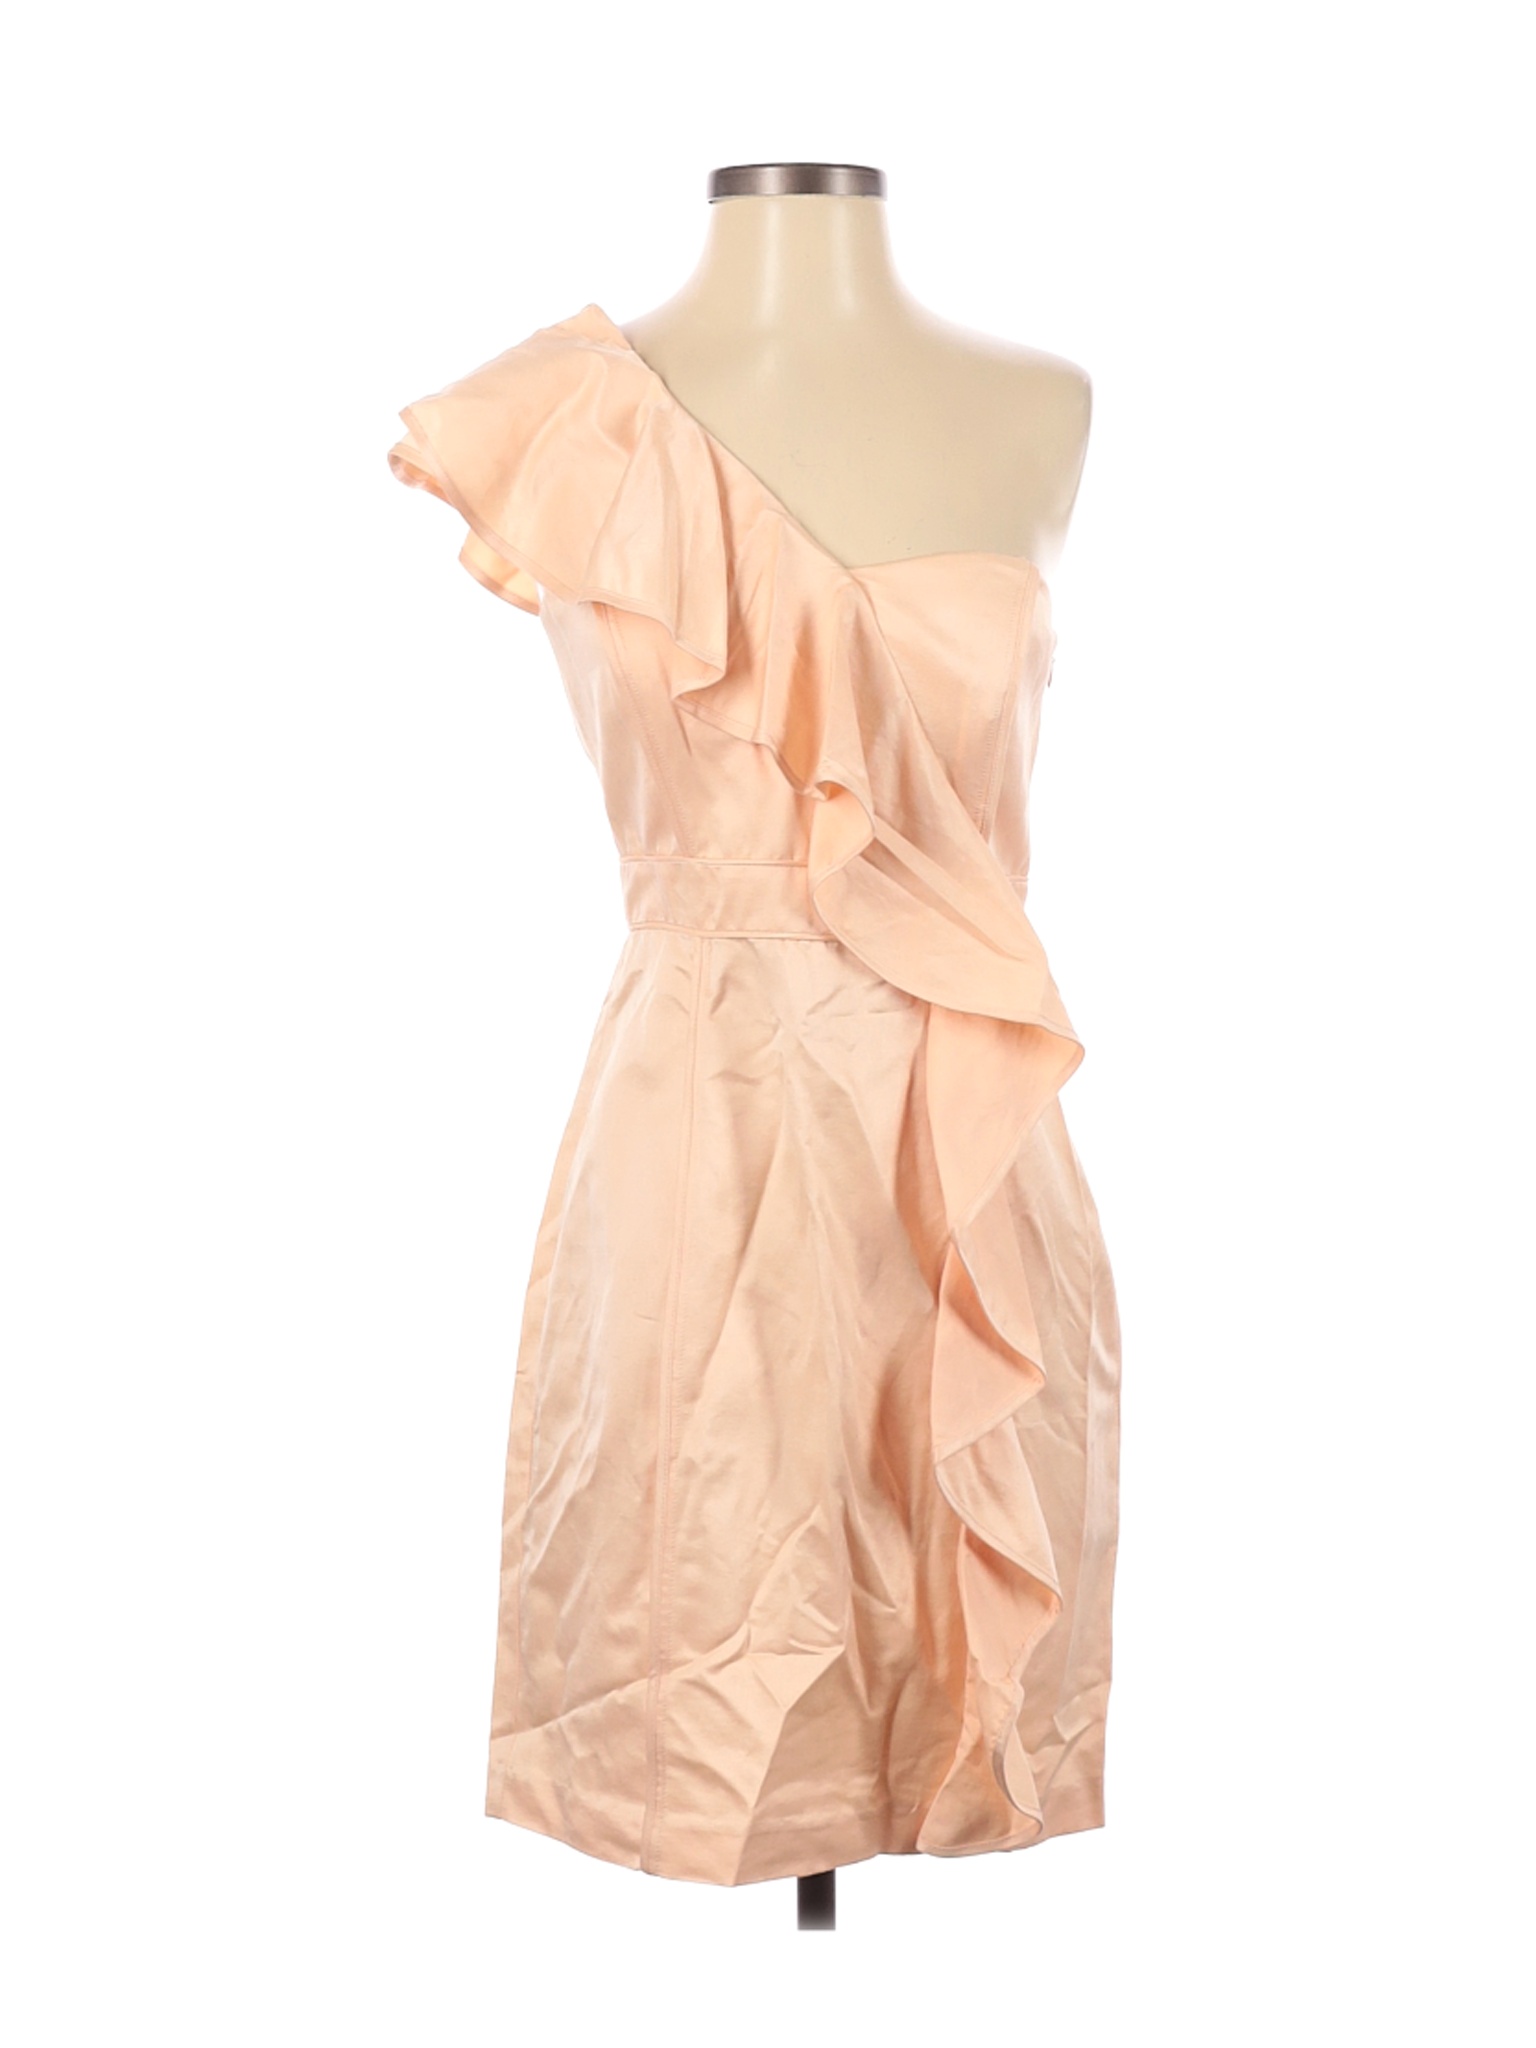 Cynthia Steffe Women Brown Cocktail Dress 2 | eBay